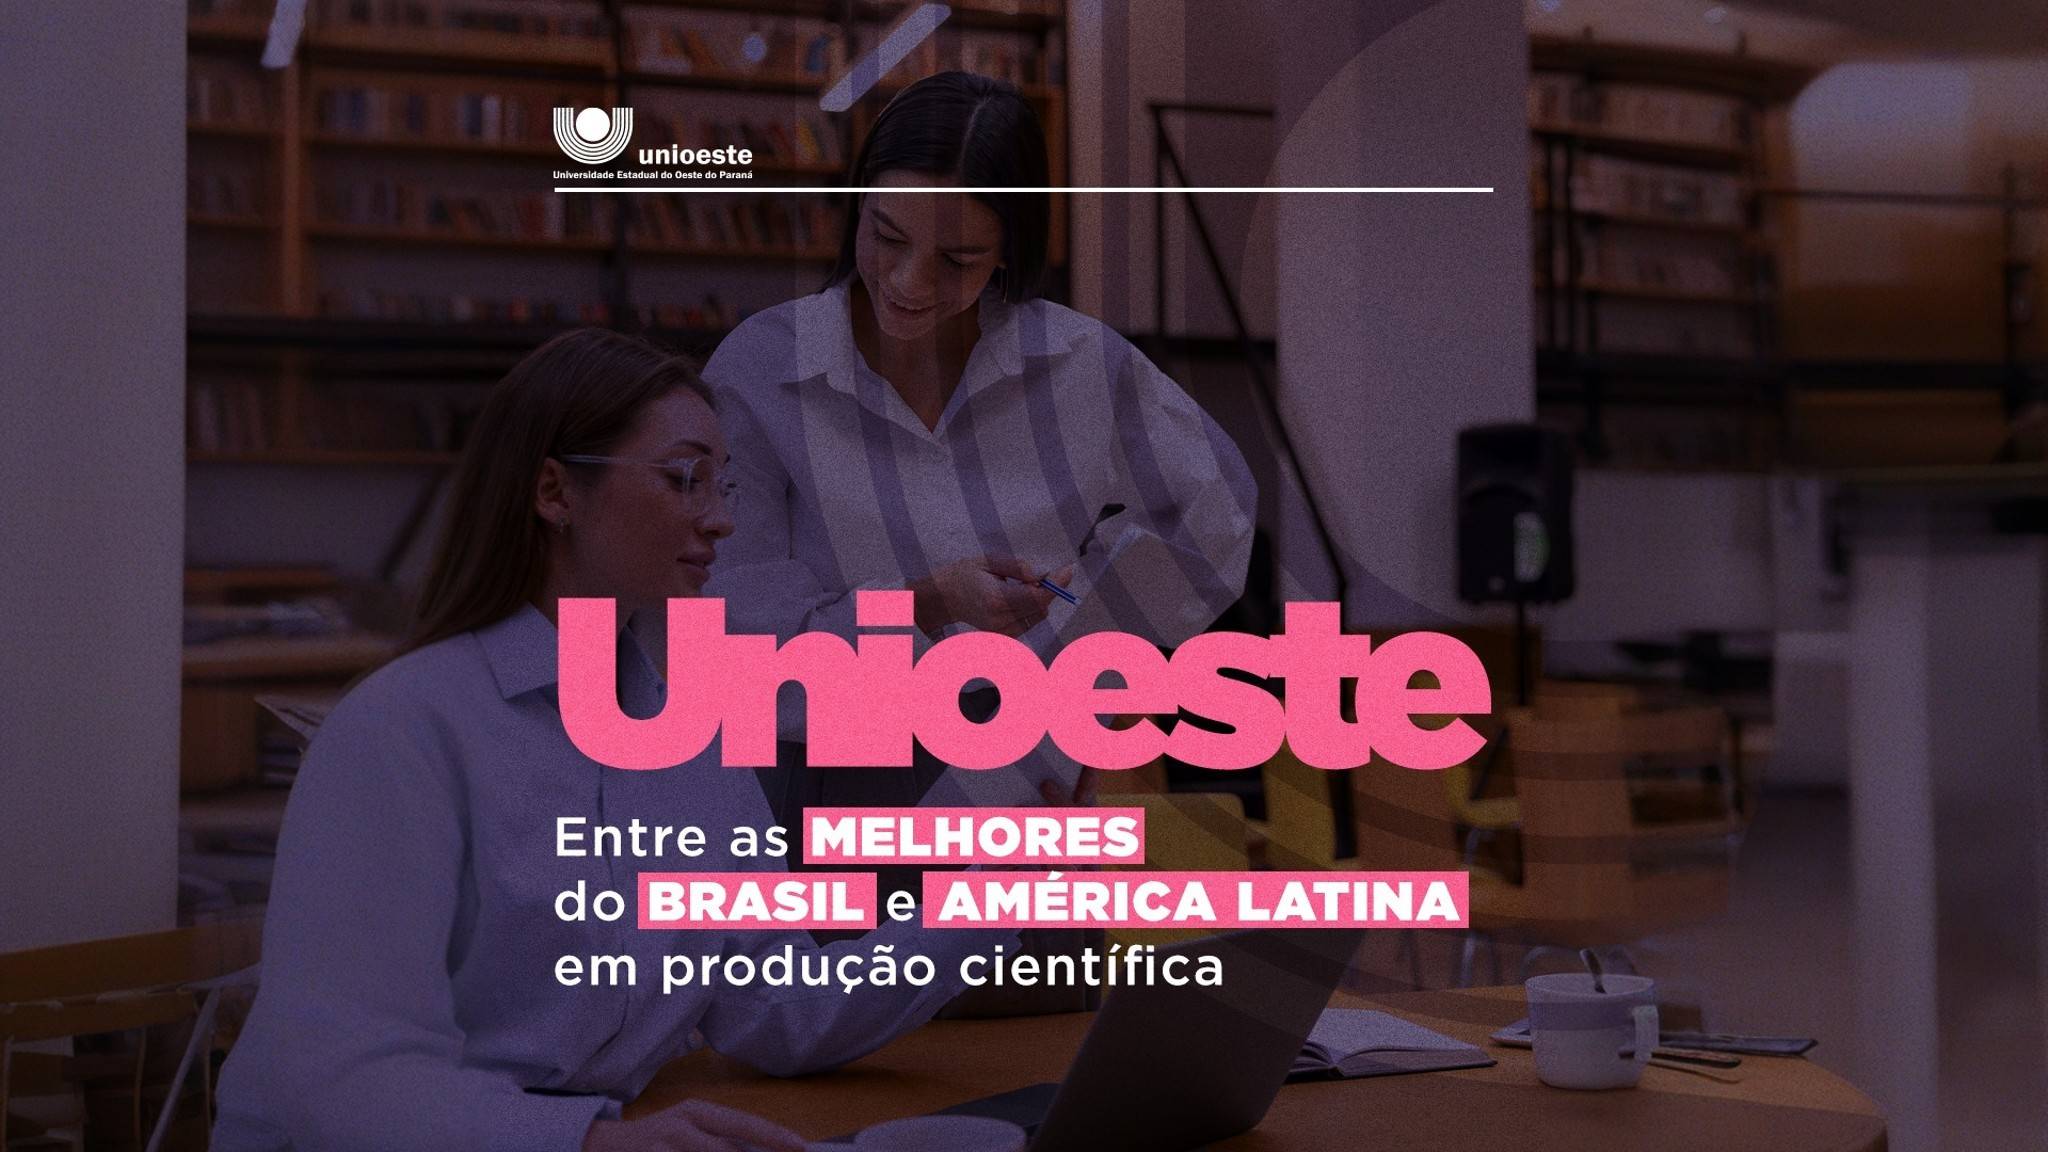 Unioeste está entre as melhores Universidades do Brasil e da América Latina